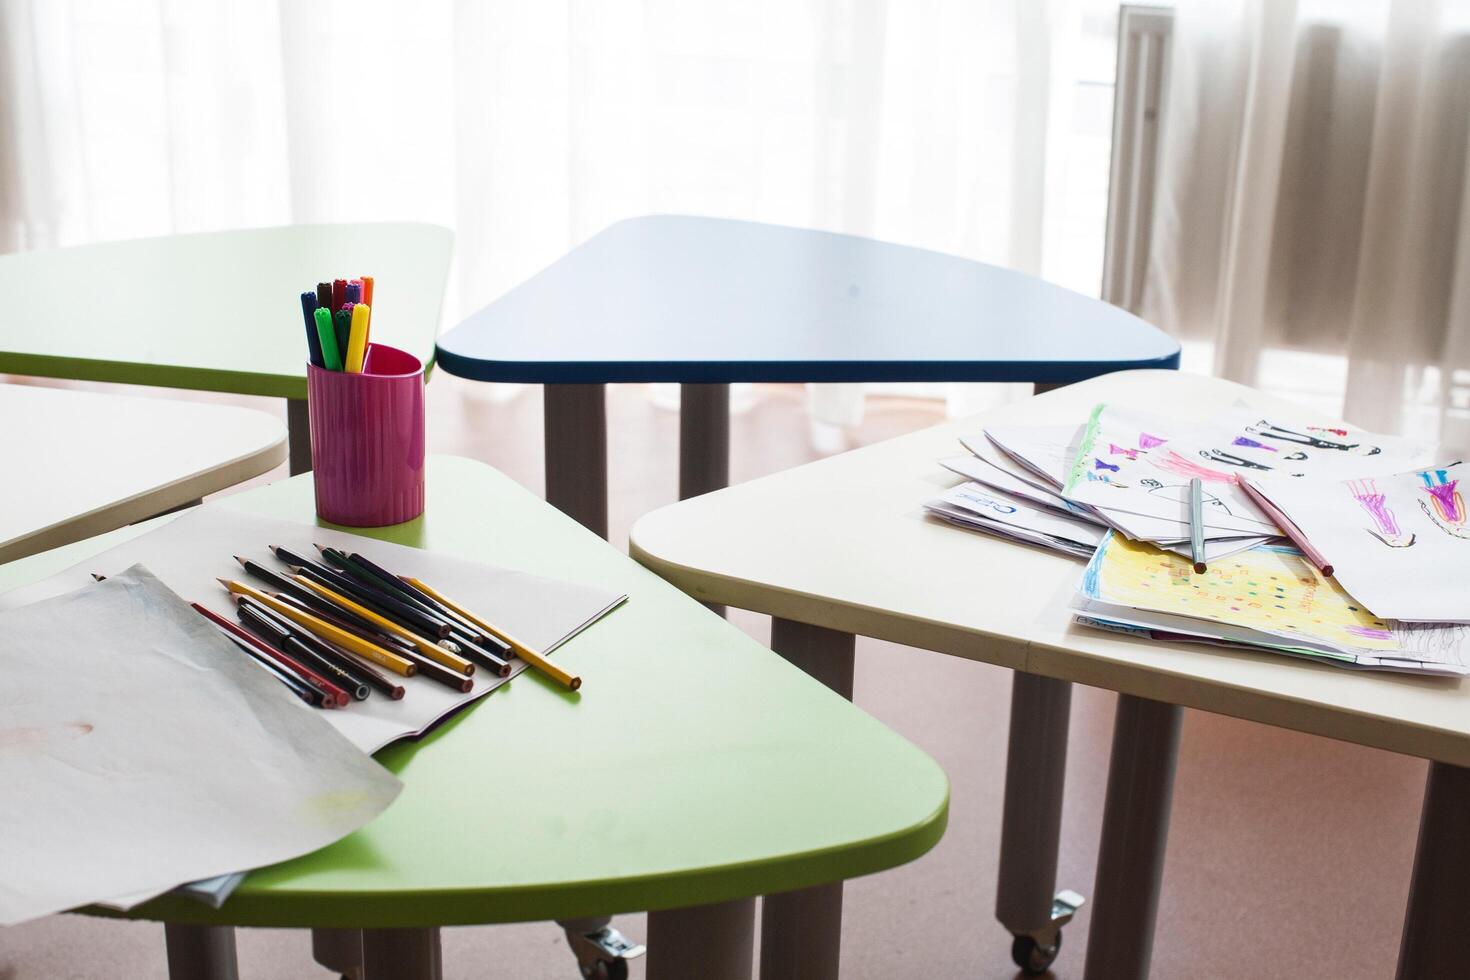 uma grupo do multicolorido, triangular estude mesas com uma caixa do colori lápis e papéis com desenhos em topo do eles foto